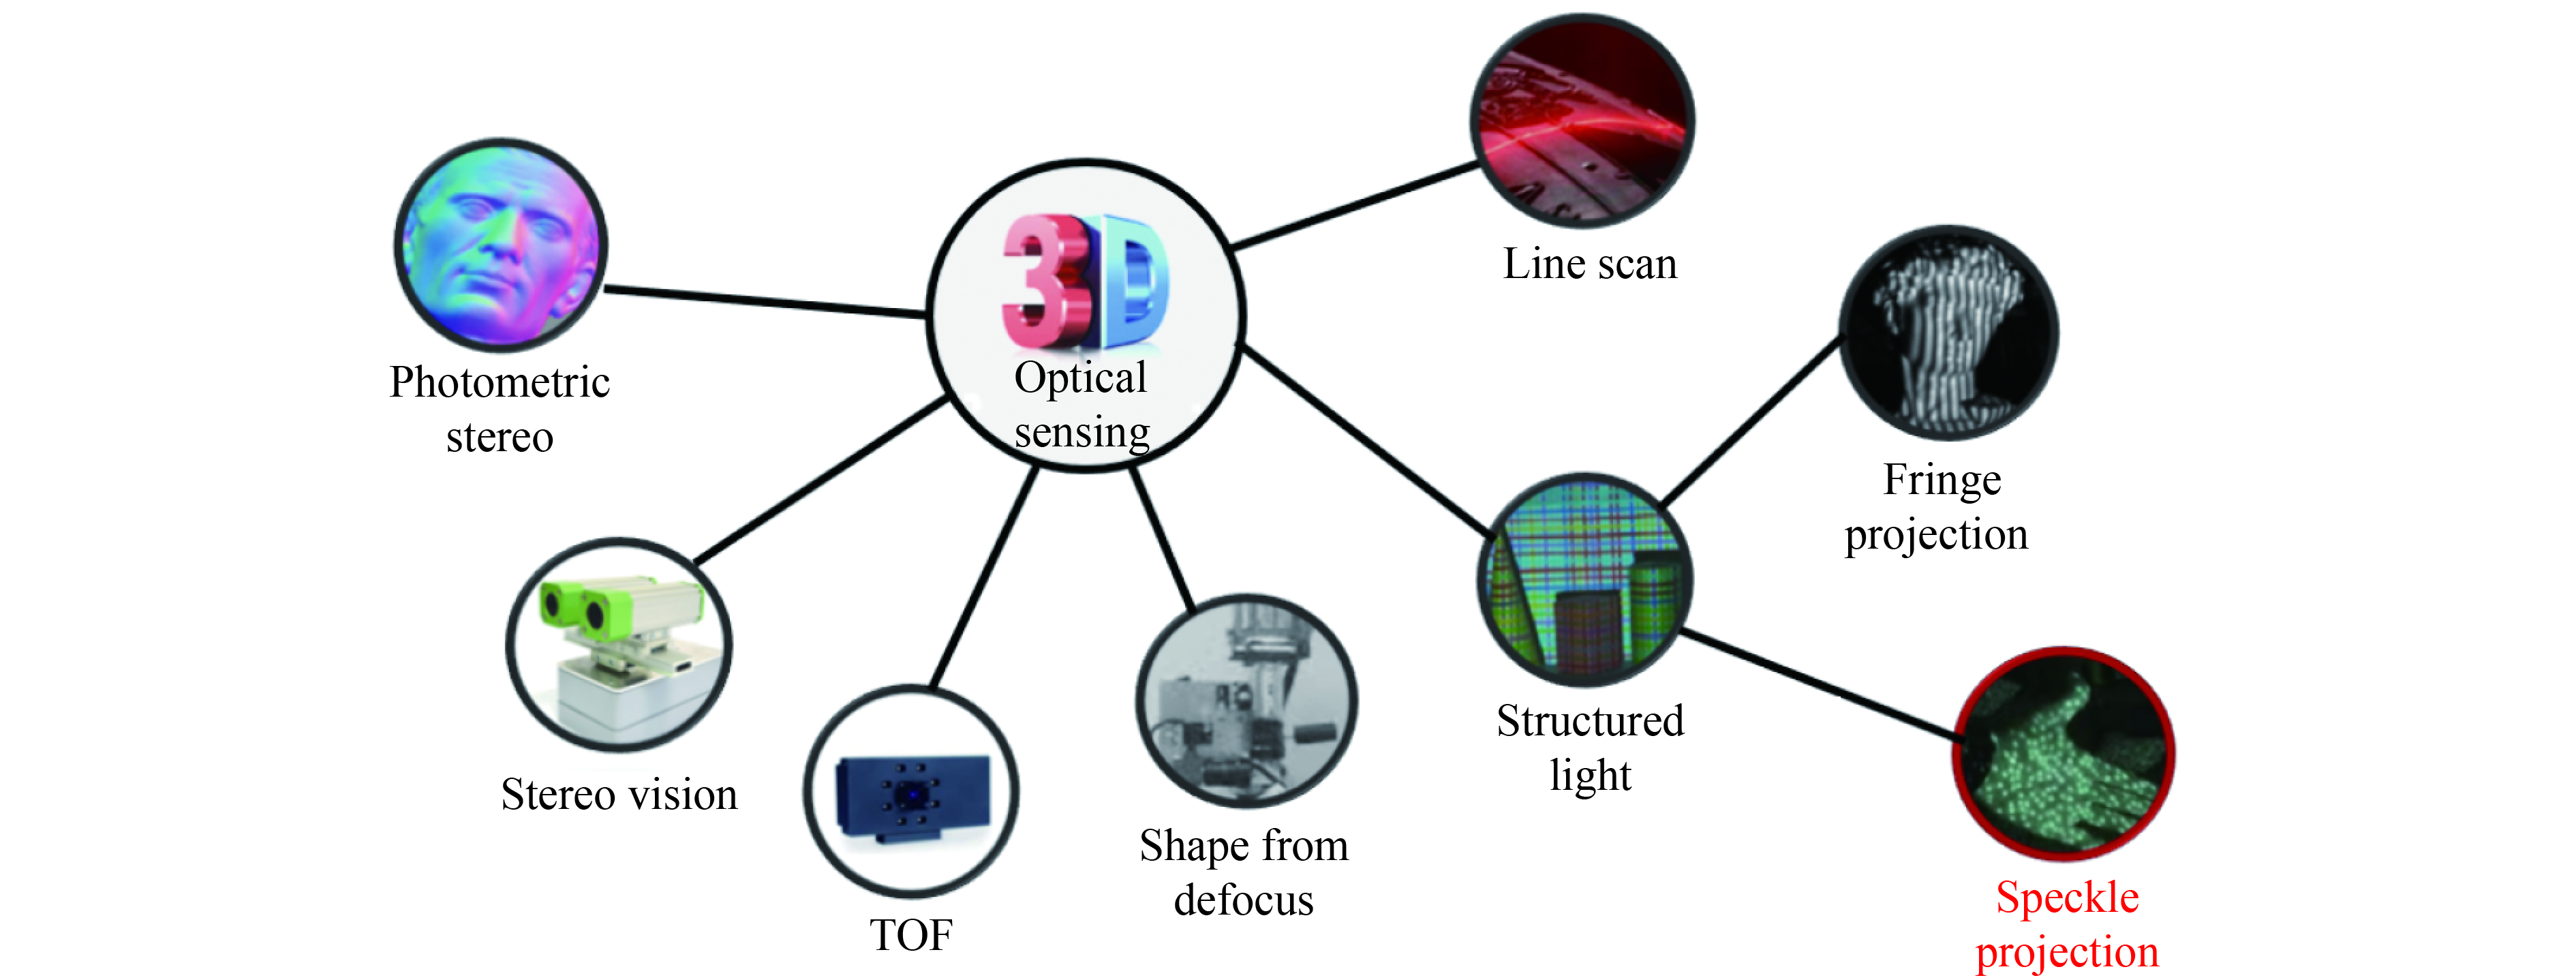 Representative techniques for 3D optical sensing